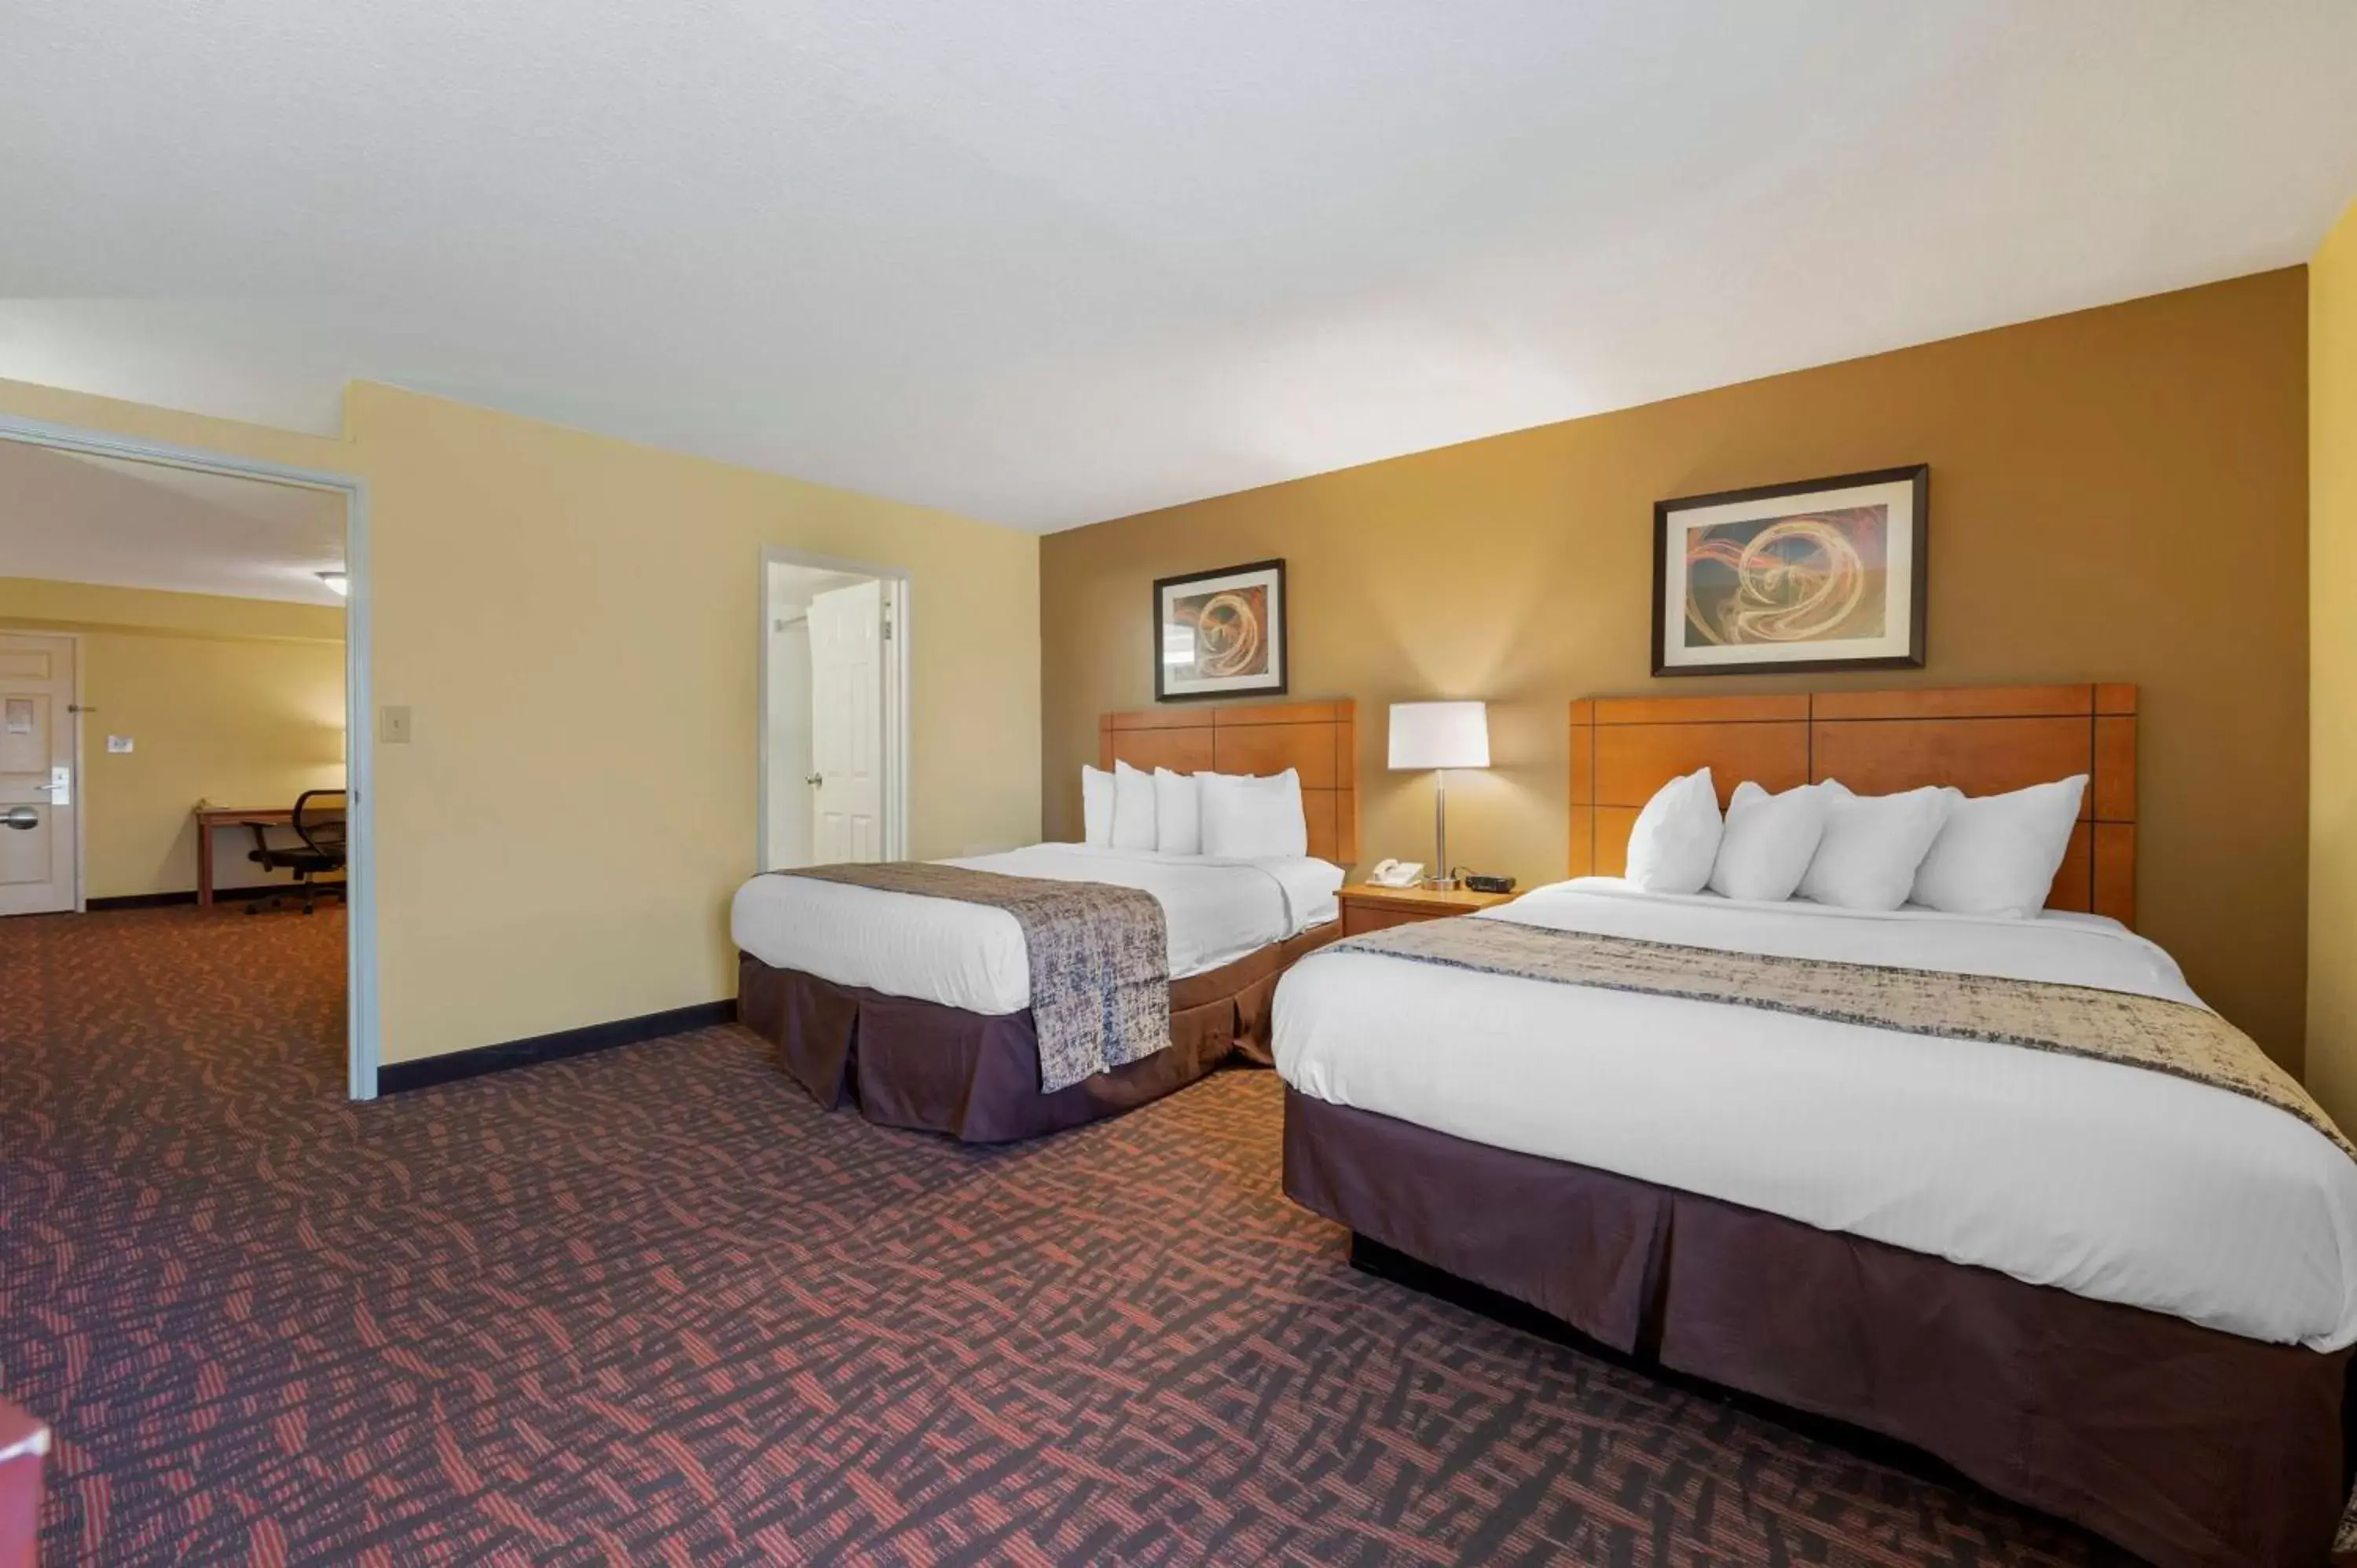 Bedroom, Bed in Best Western Louisville East Inn & Suites